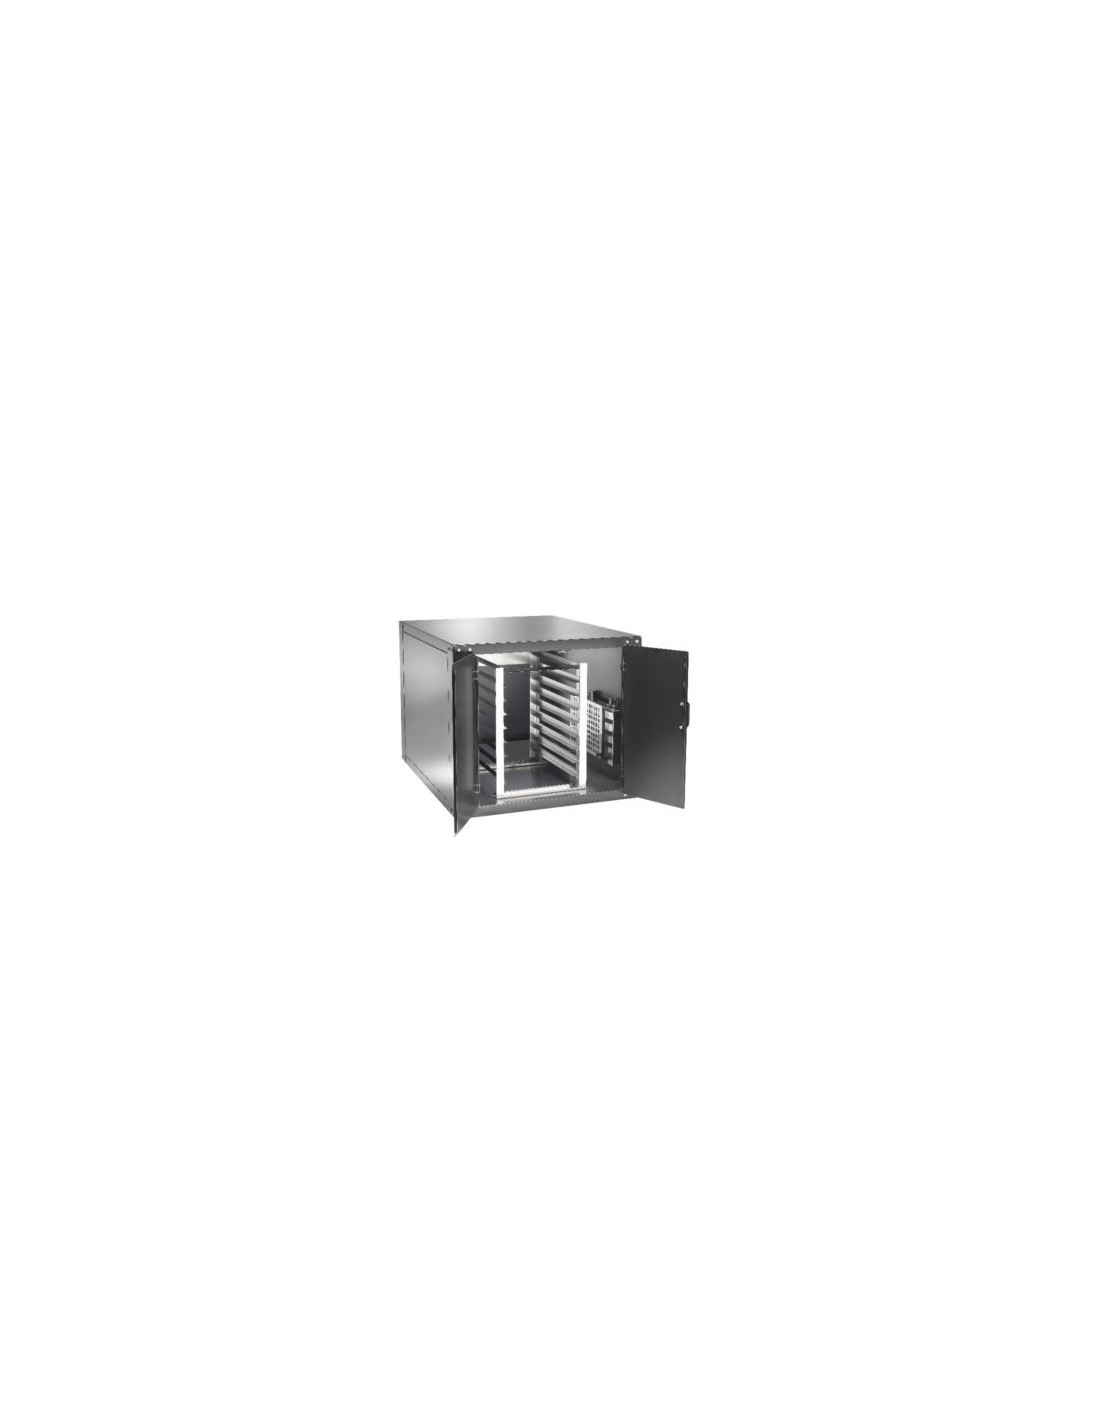 Cella lievitazione per forno - Mod. CLFMEW6 - Capacità  teglie n. 11 - Temperatura 0÷90°C - Dimensione cm 115 x 74 x 98 h